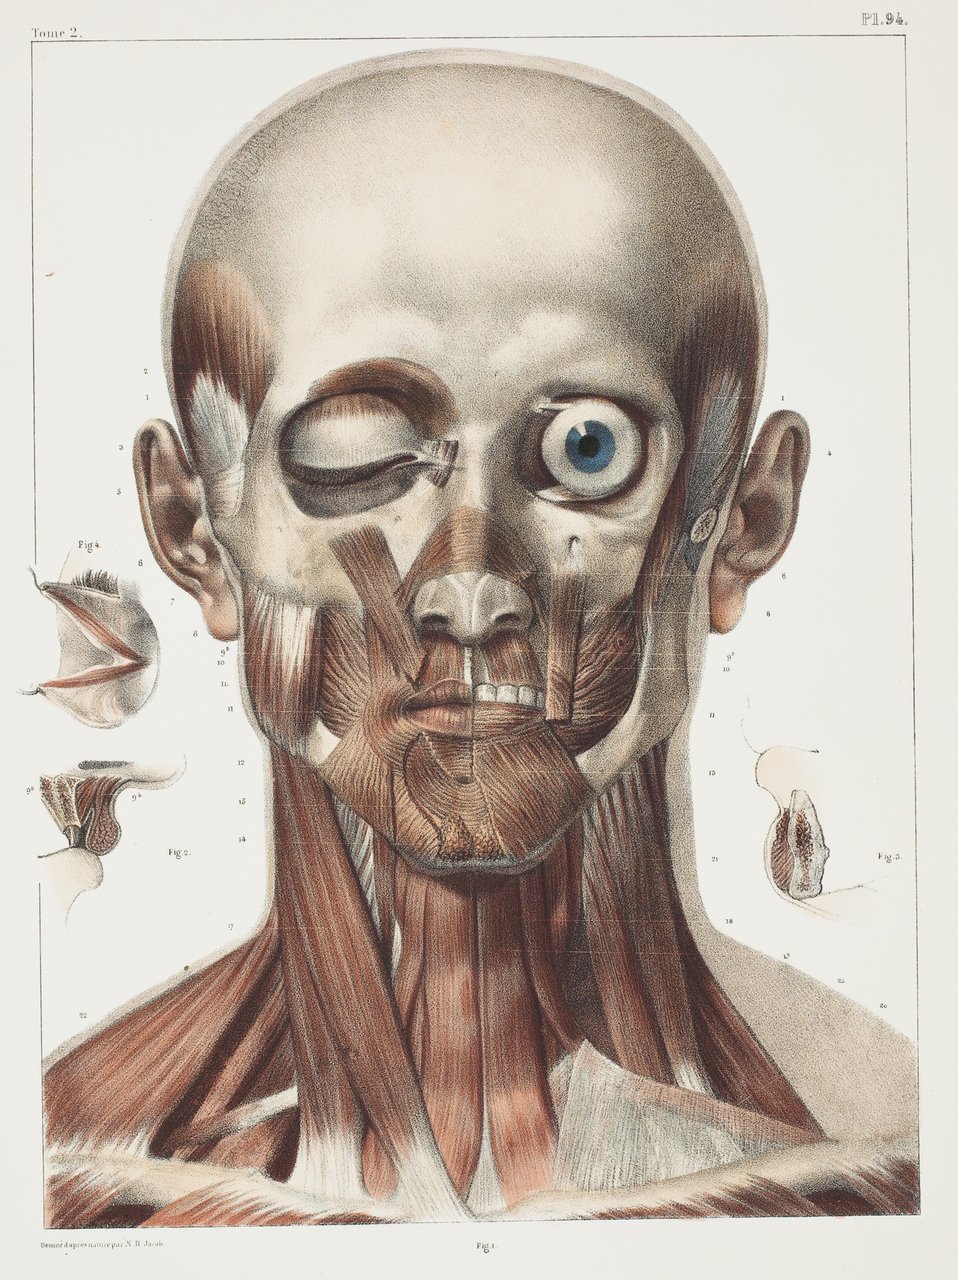 Anatomical plate Traité complet de l'anatomie de l'homme.Vols. I-VIII. - Author: BOURGERY, Jean-Baptiste (1797-1849)